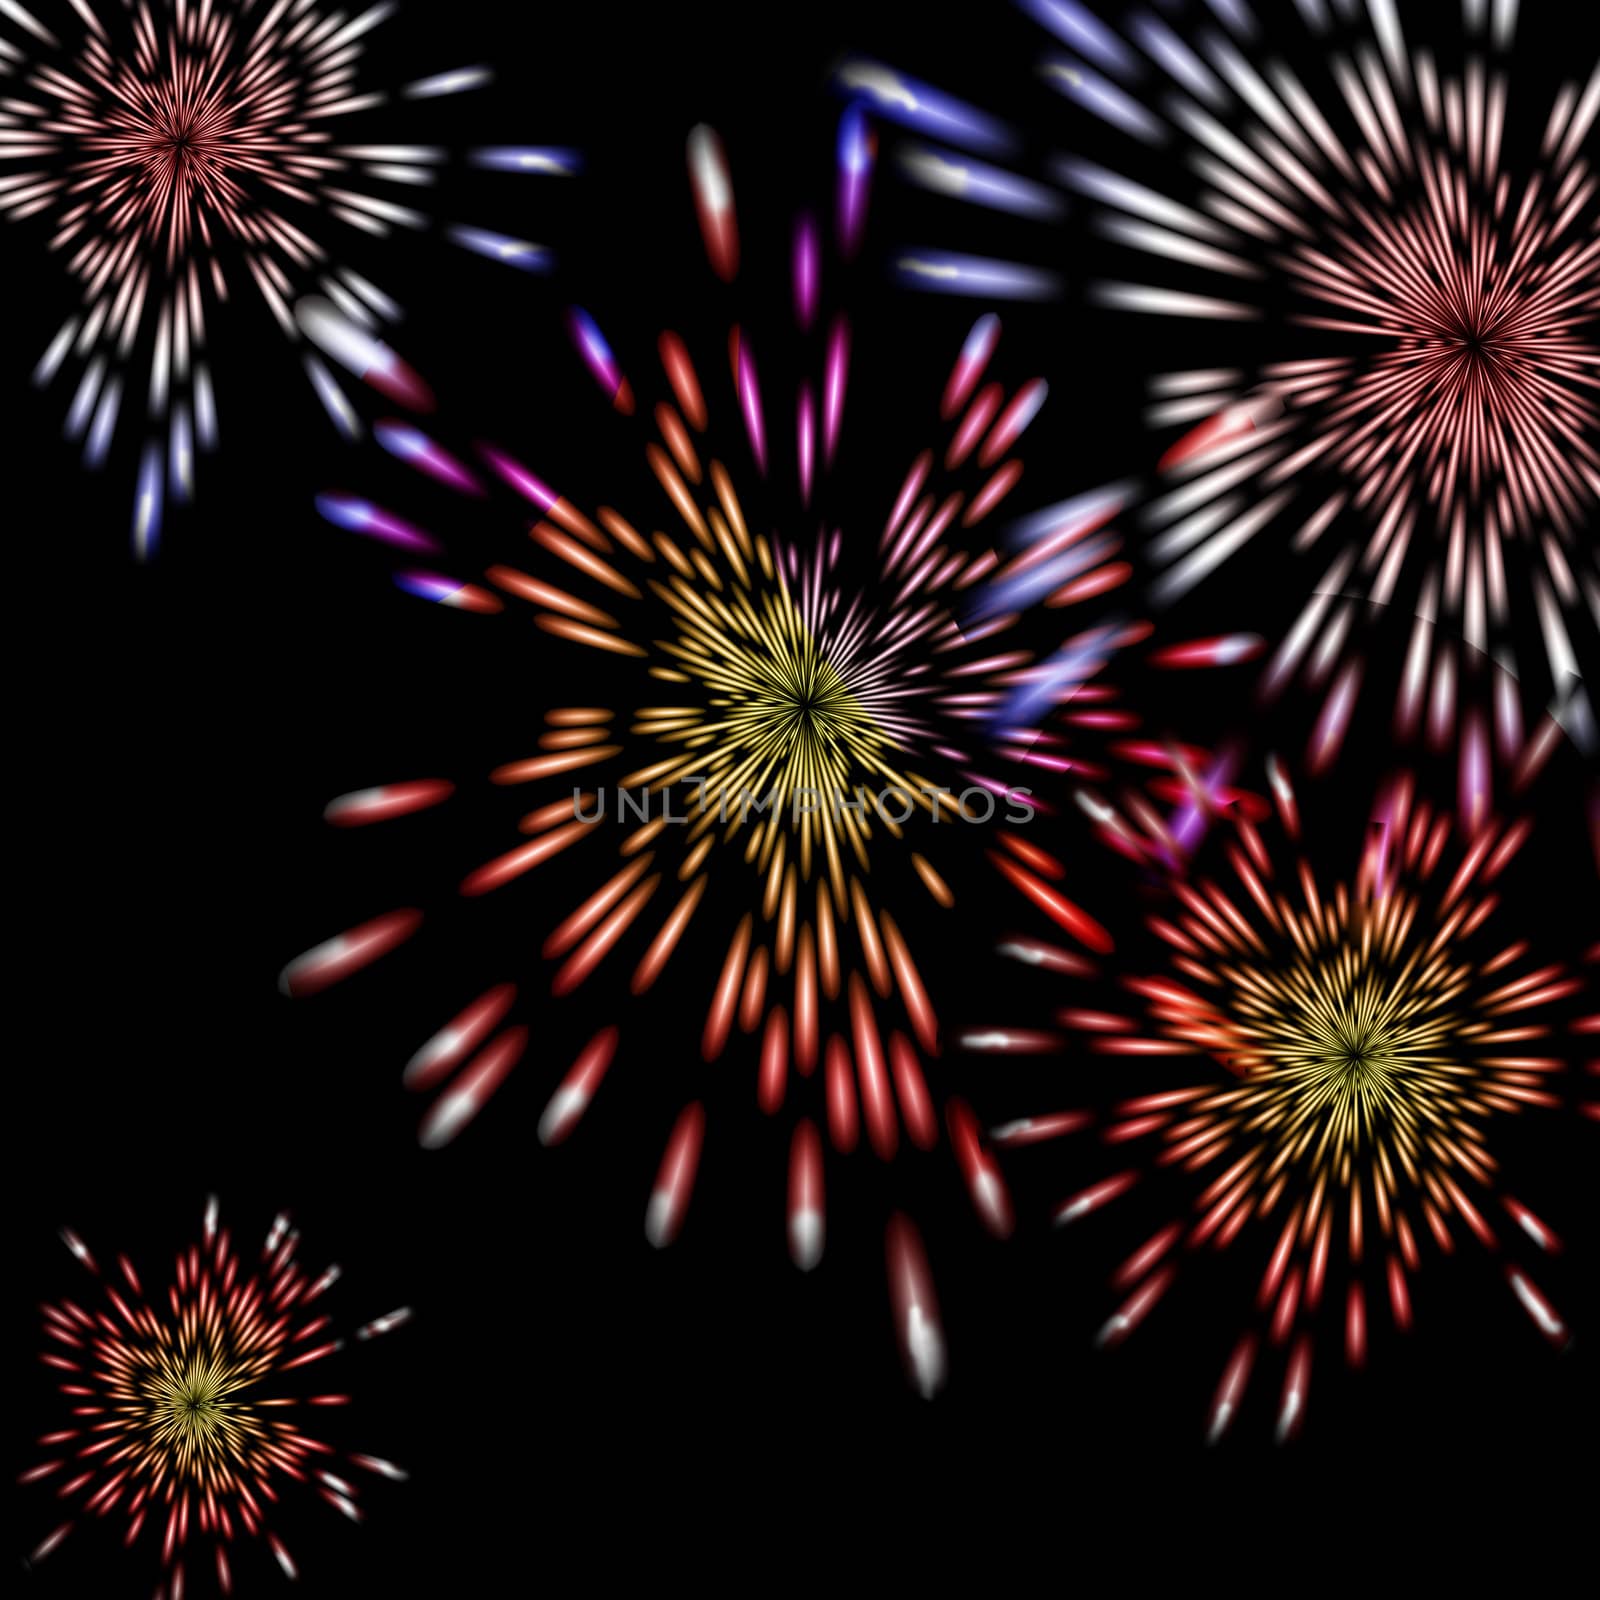 Fireworks bursting by karensuki